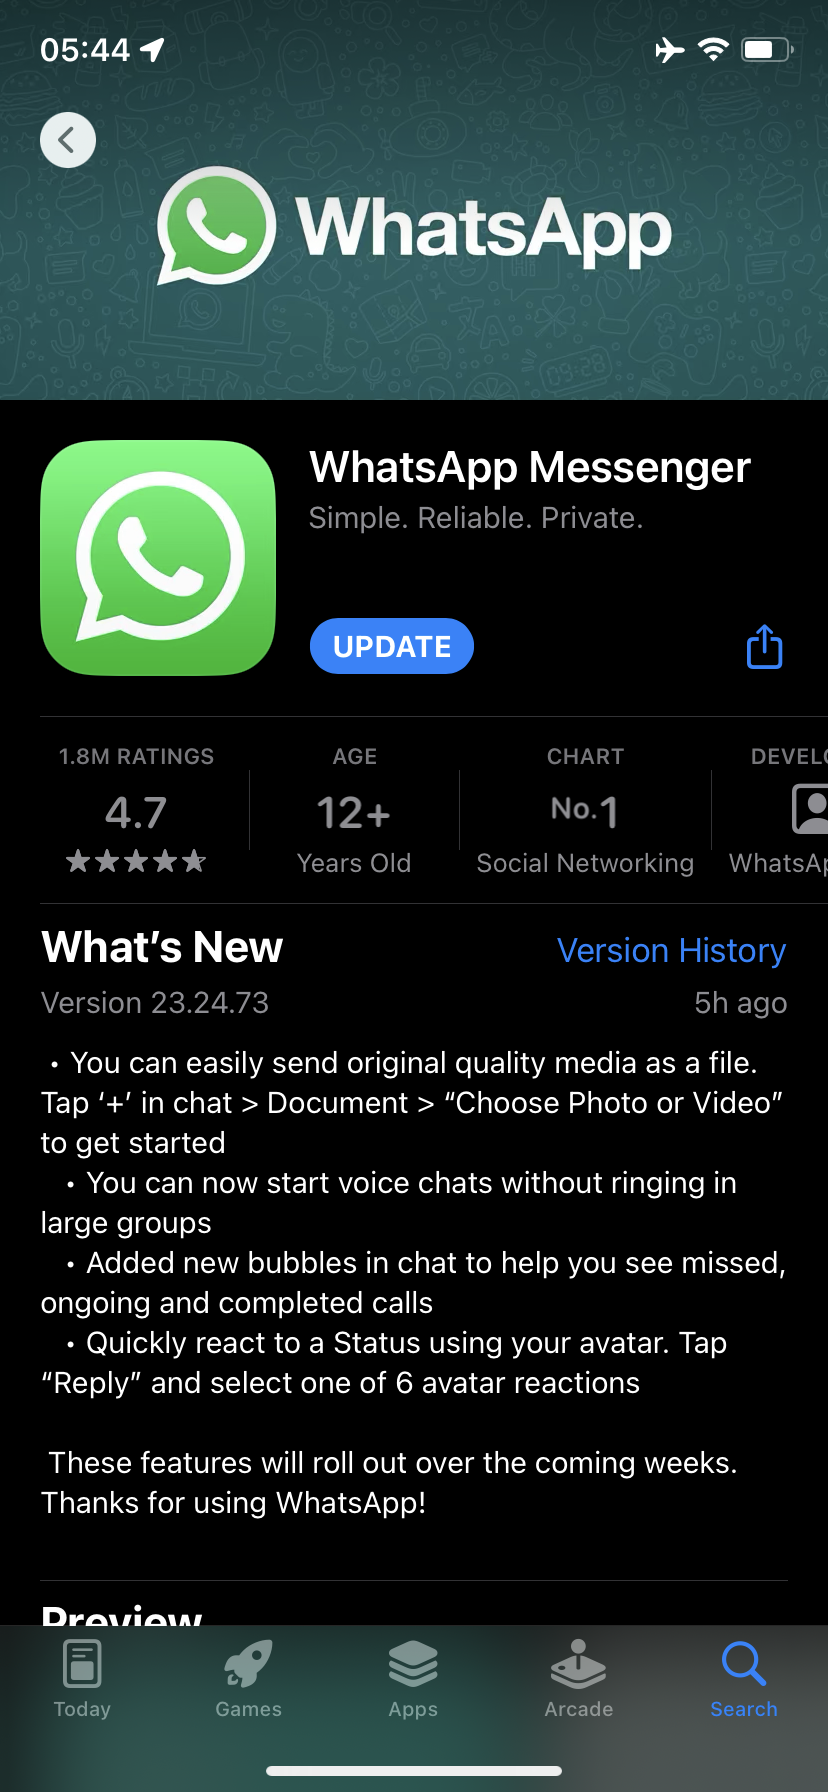 The new WhatsApp update